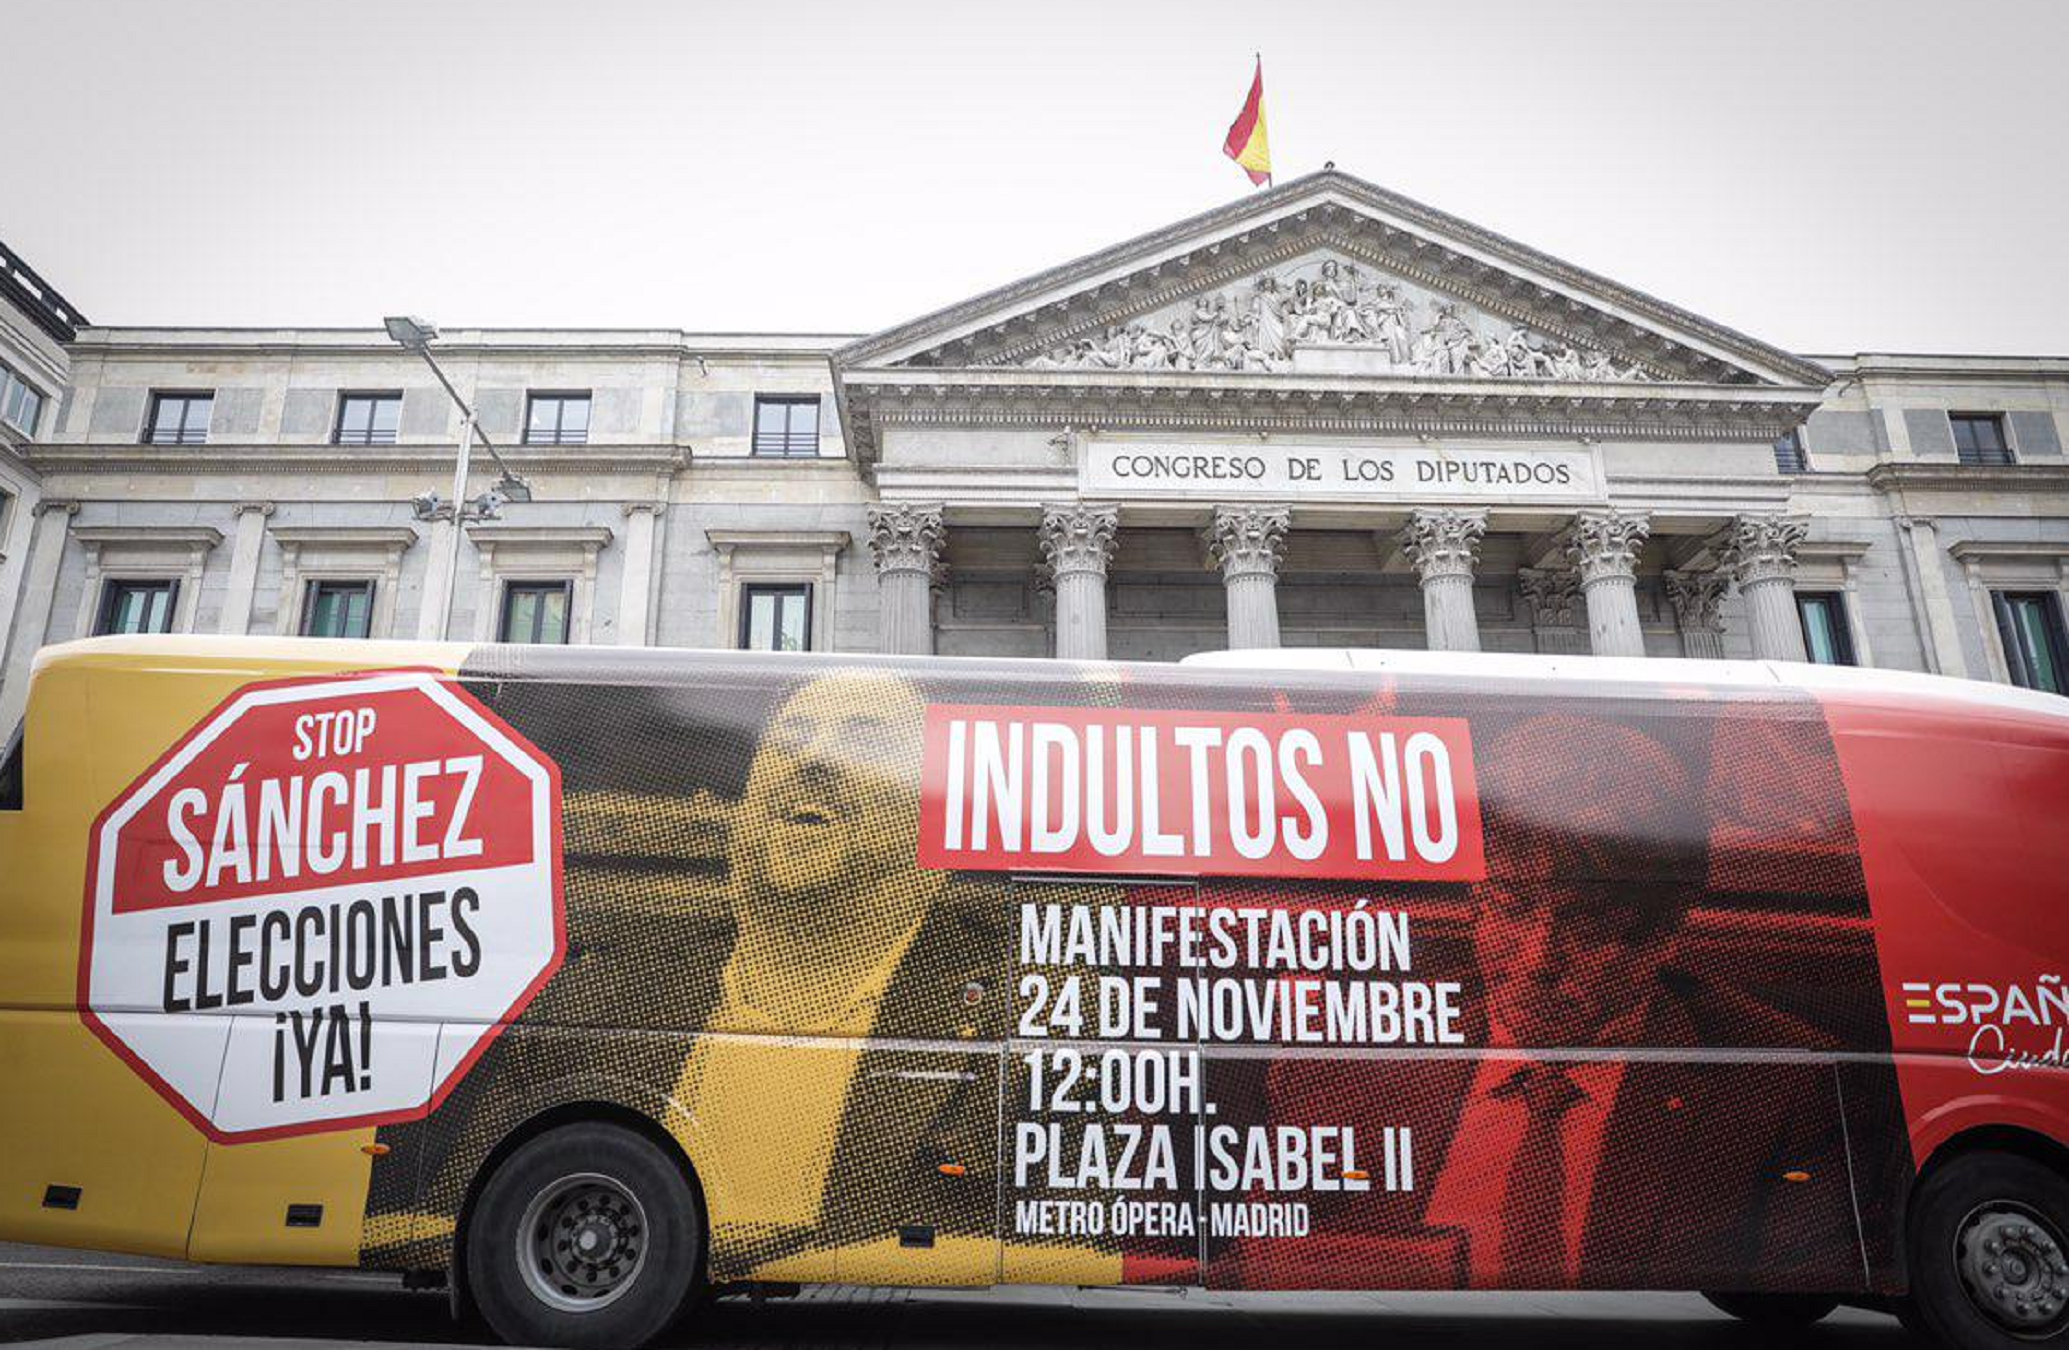 Toni Soler rebenta amb el vergonyós bus de Cs pels carrers de Madrid